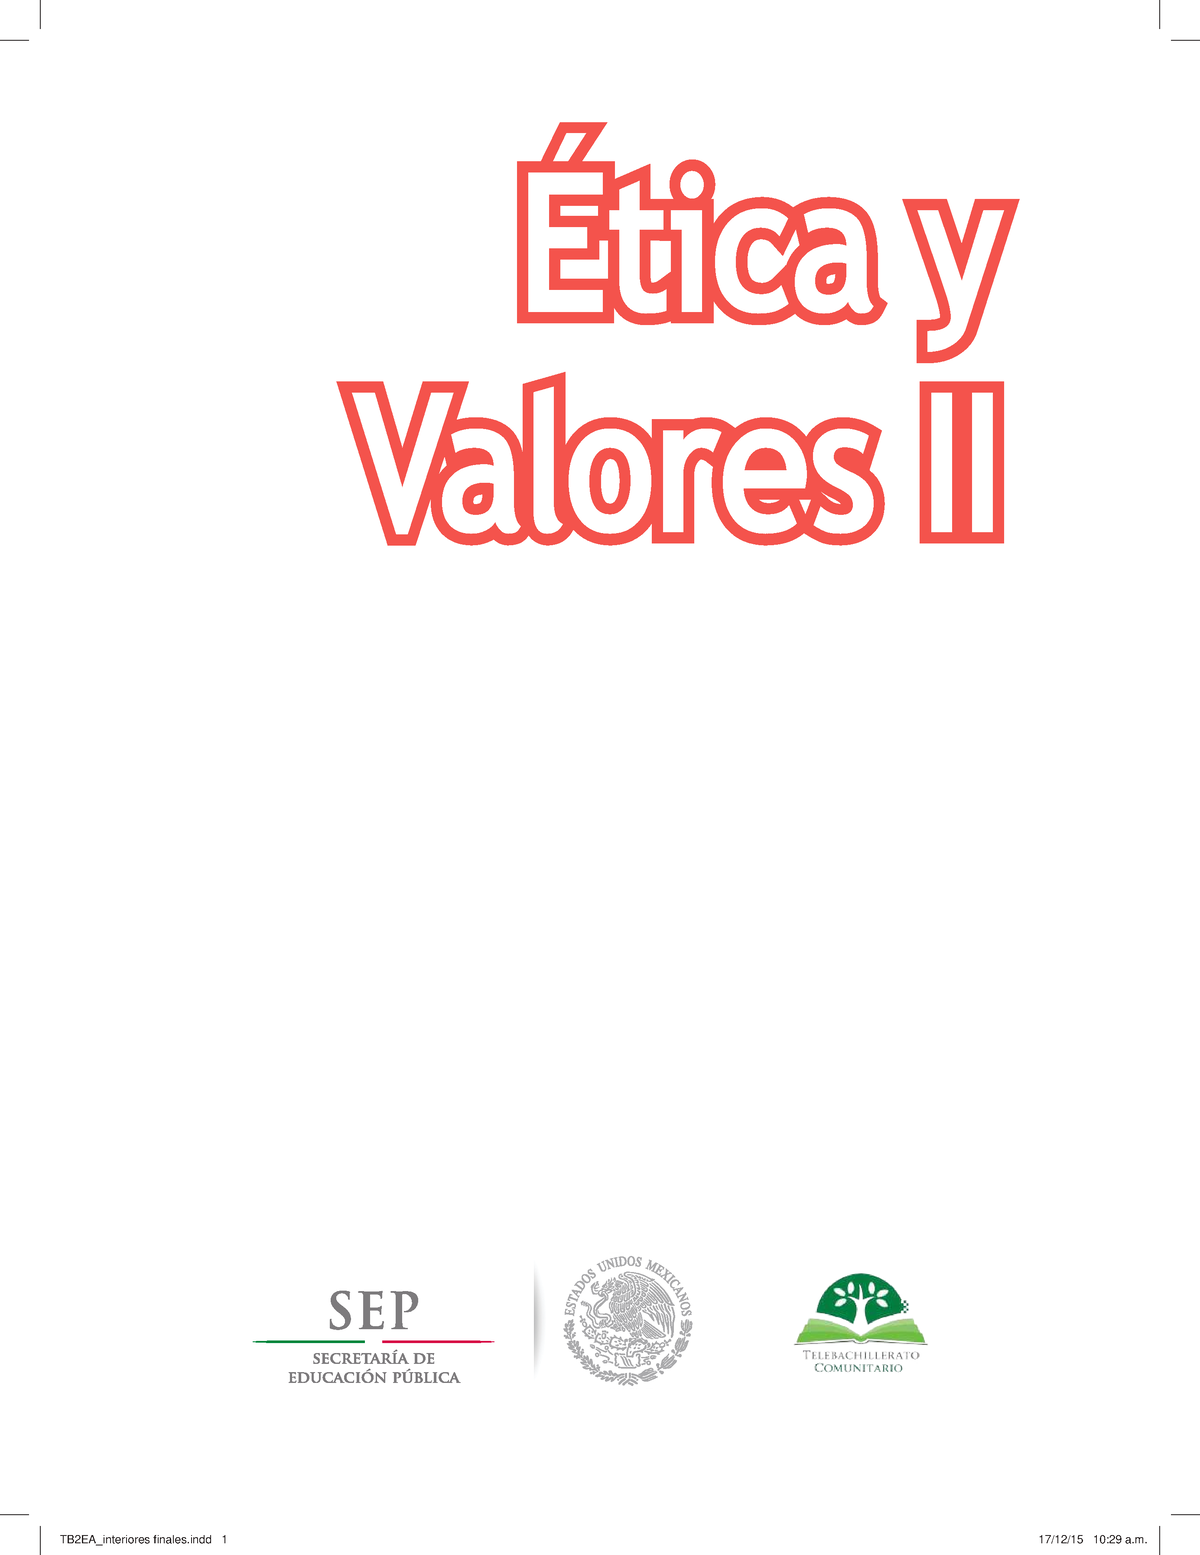 Etica Y Valores Ii Compressed Ética Y Valores Ii Telebachillerato Comunitario Segundo 3926